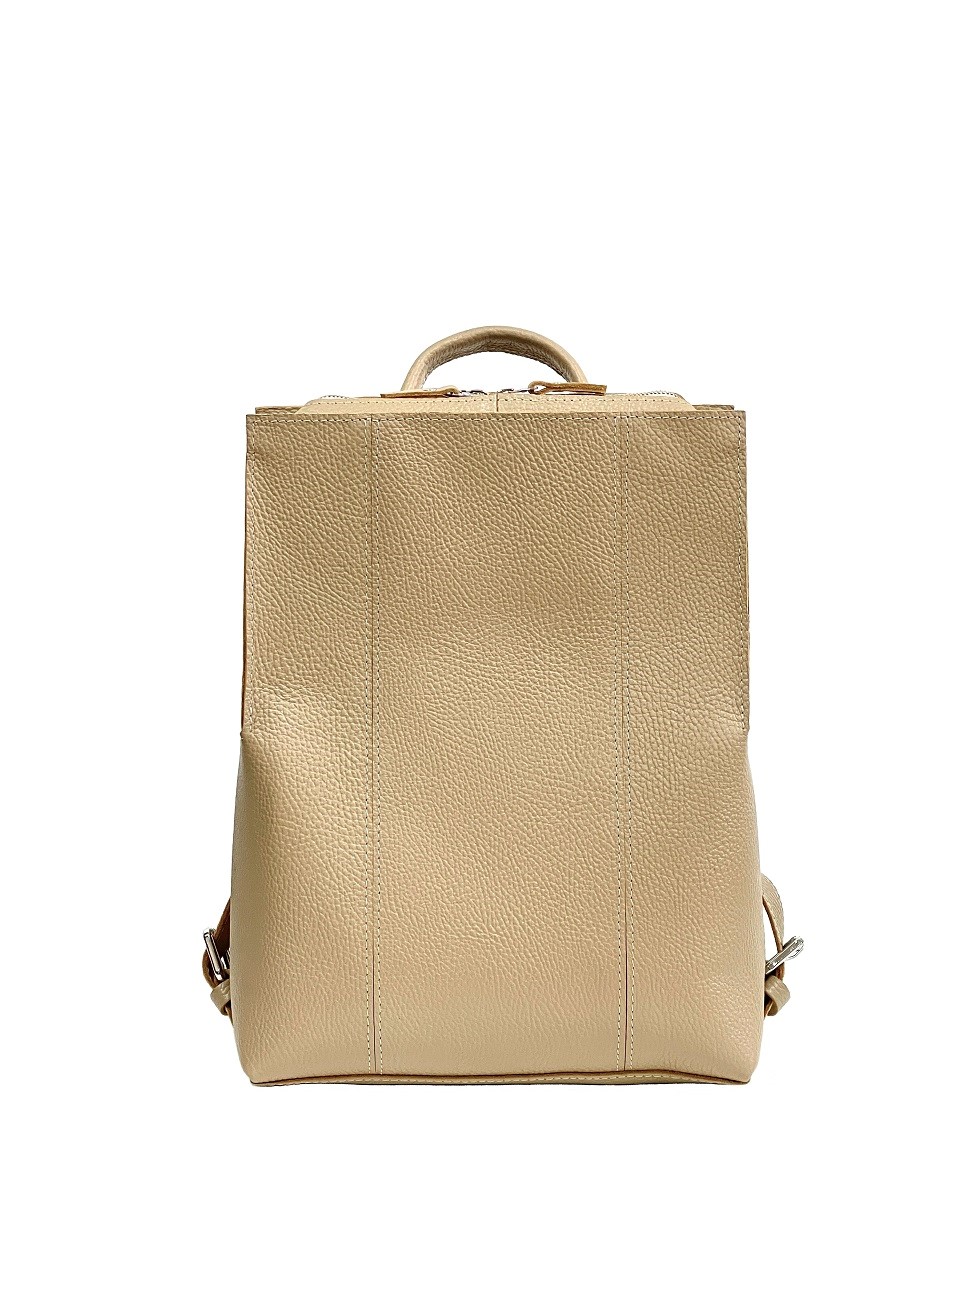 Женский рюкзак из натуральной кожи бежевый B014 beige grain